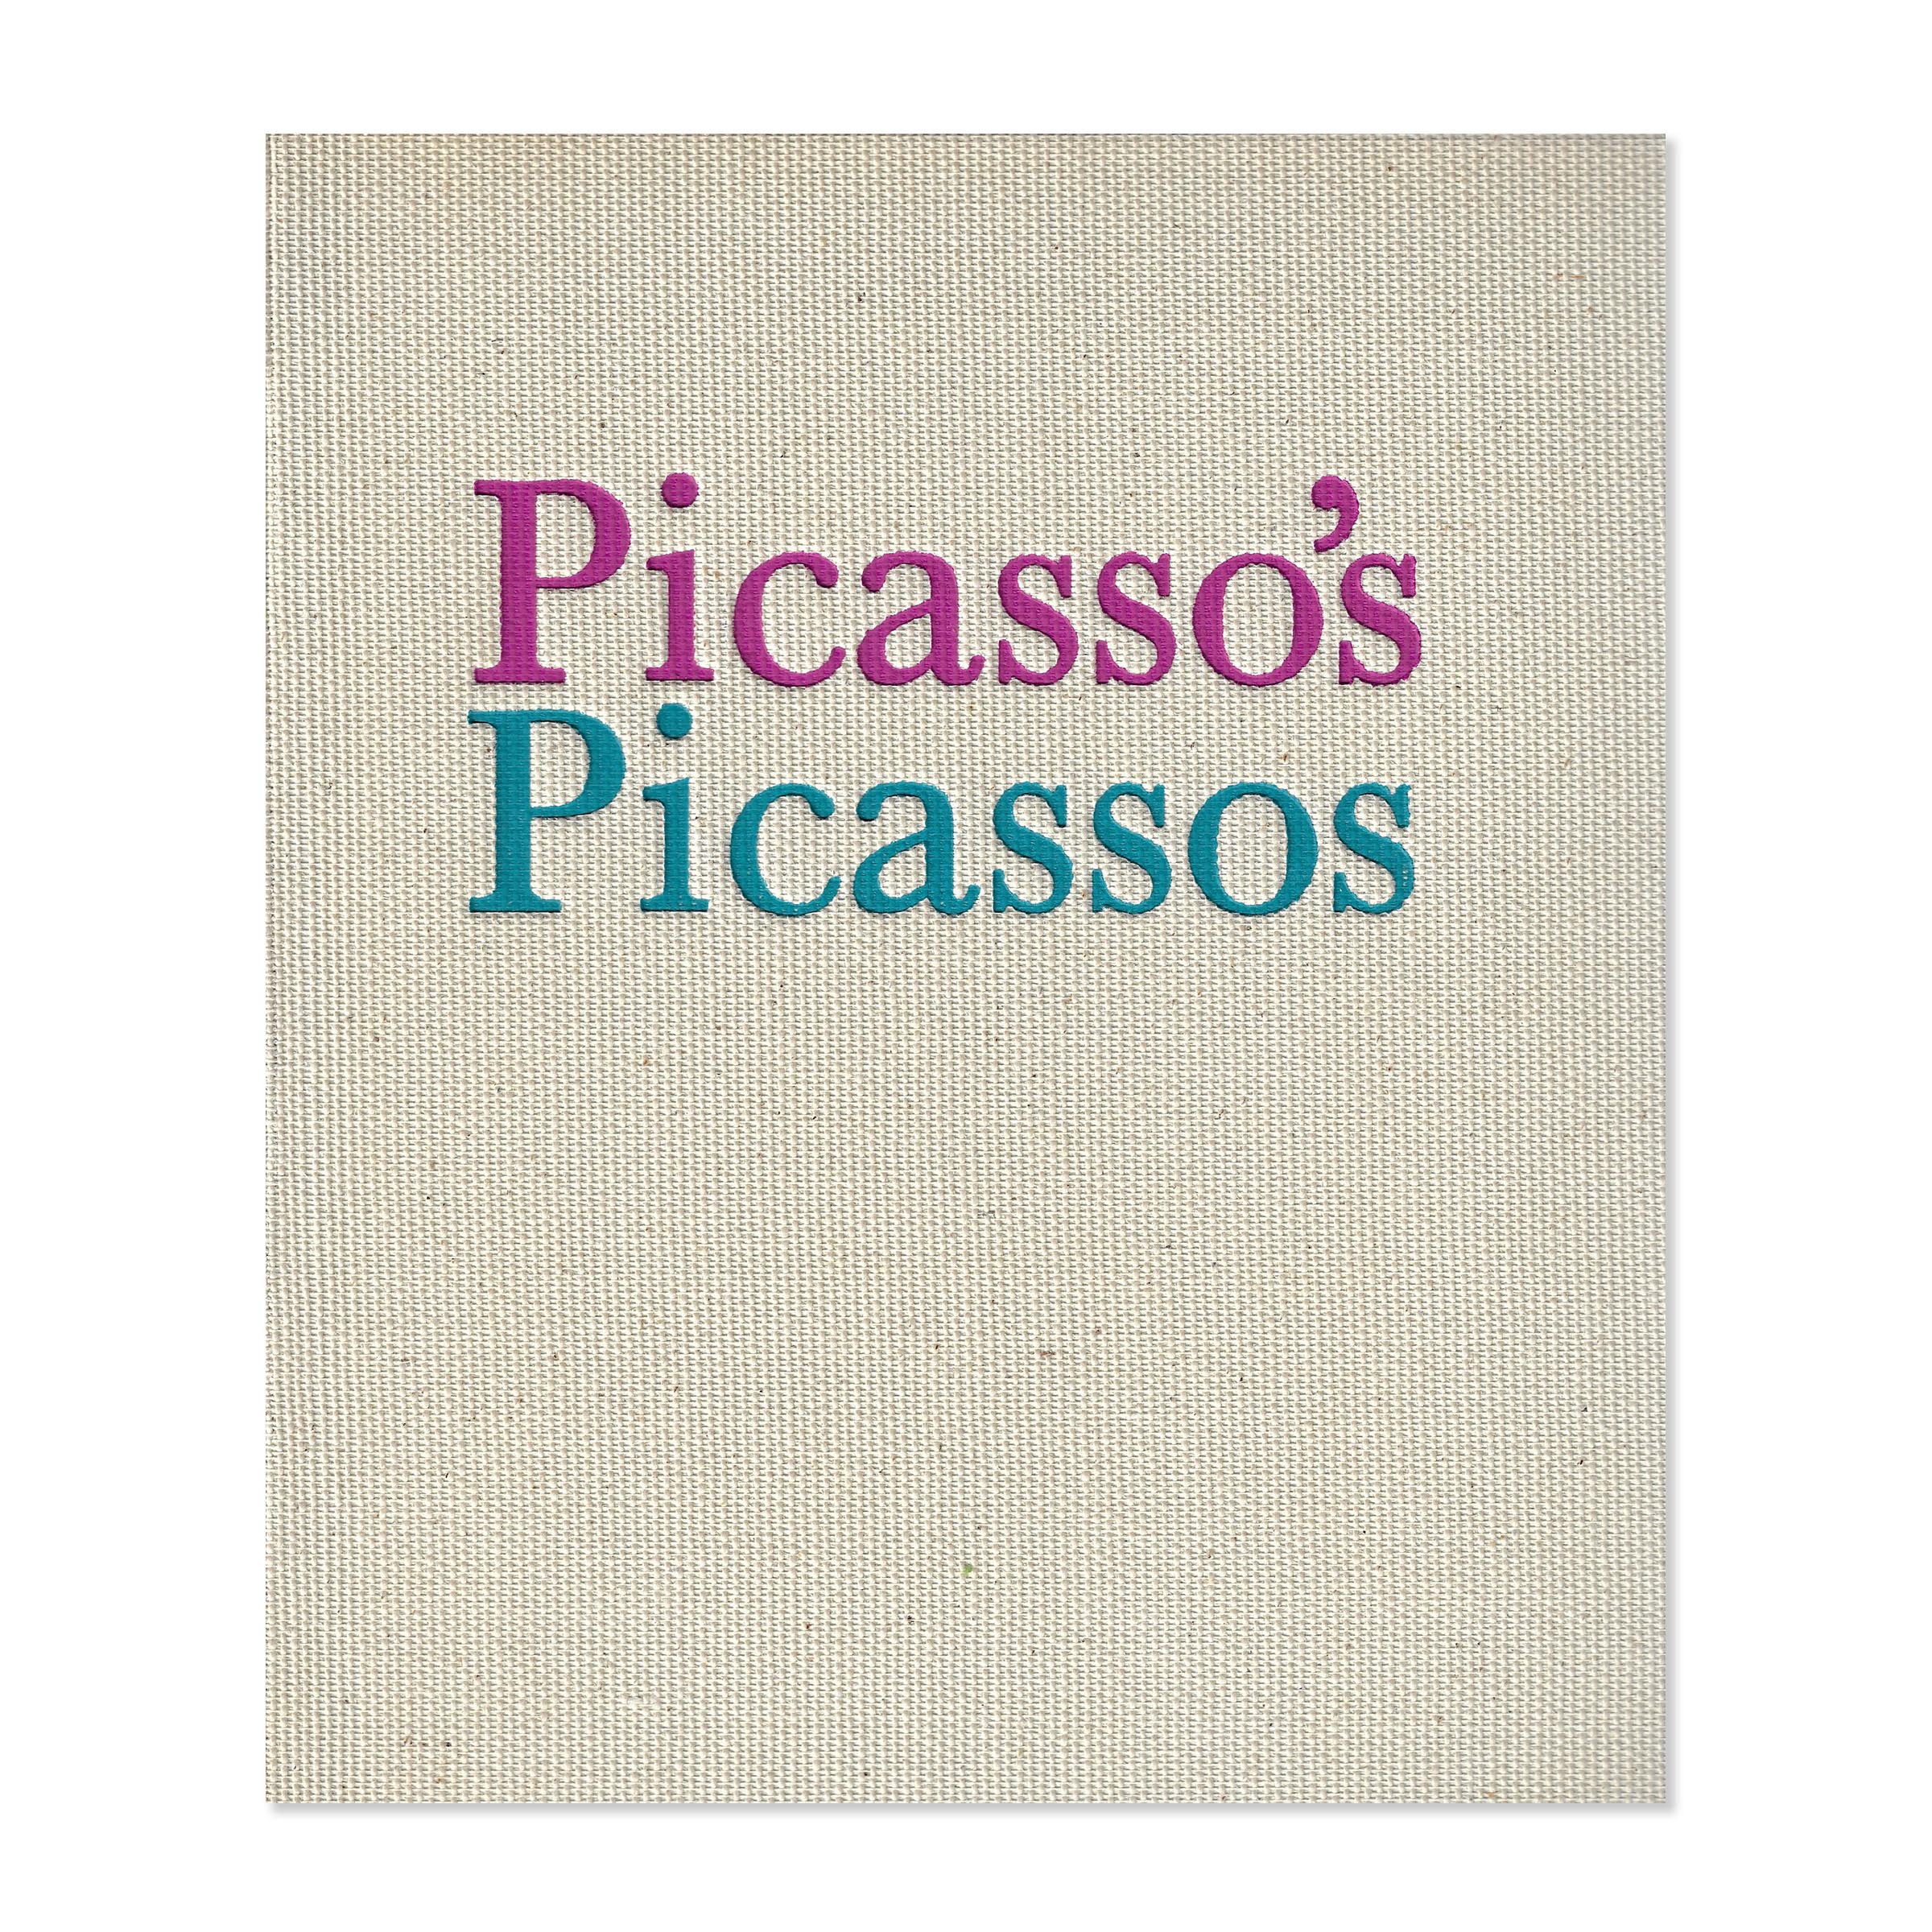 Cover Picasso's Picassos